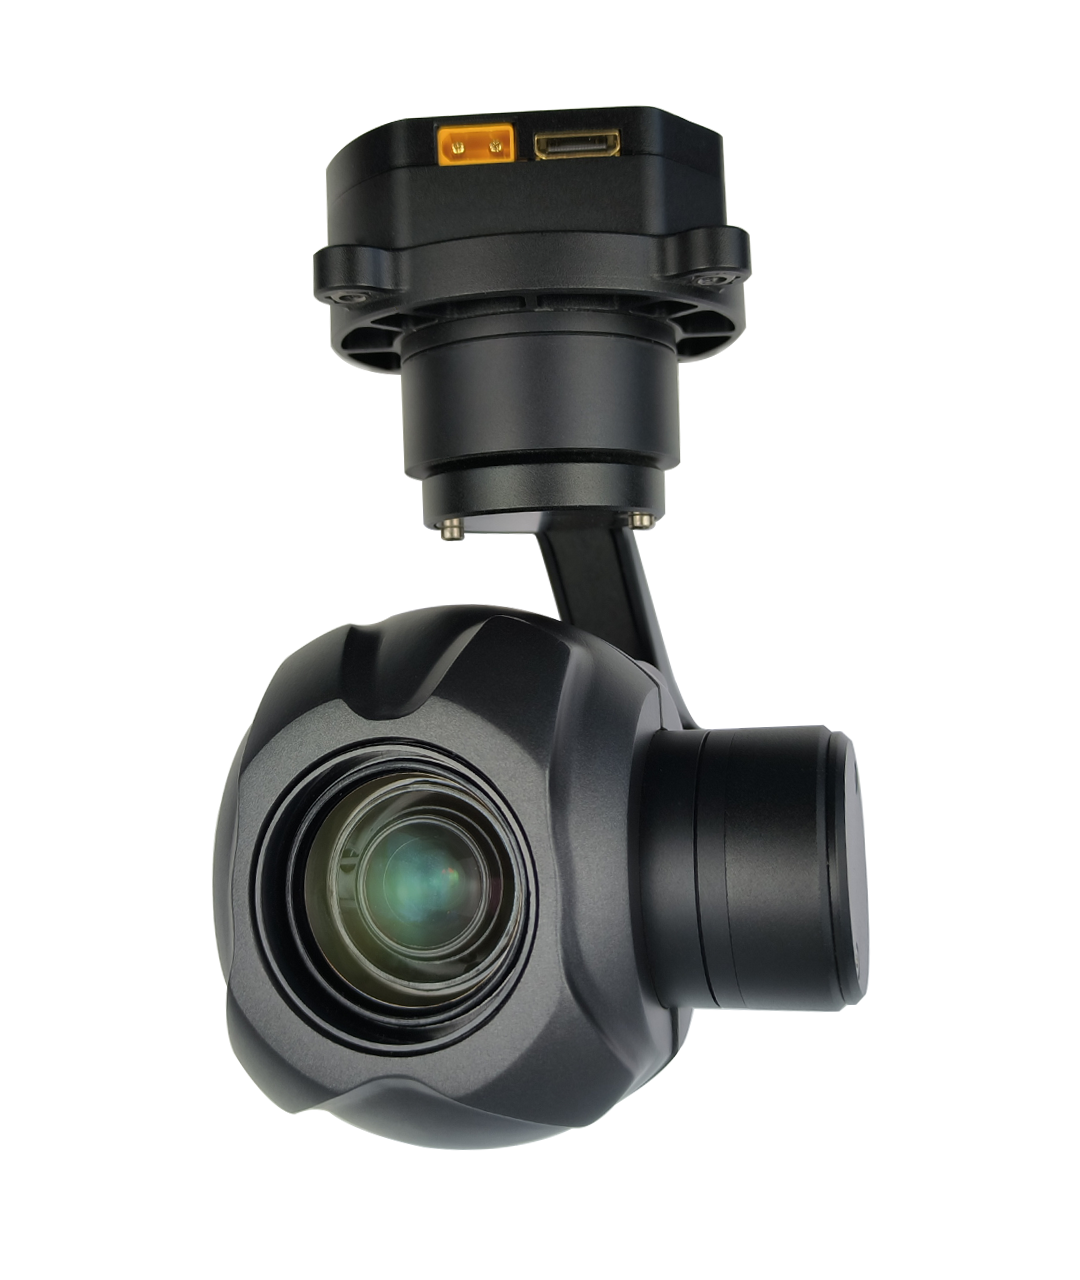 TOPOTEK KHY10S90 Drone Gimbal Camera - 10x Optical zoom IRCUT 3-Axis Gimbal camera, IP/HDMI output